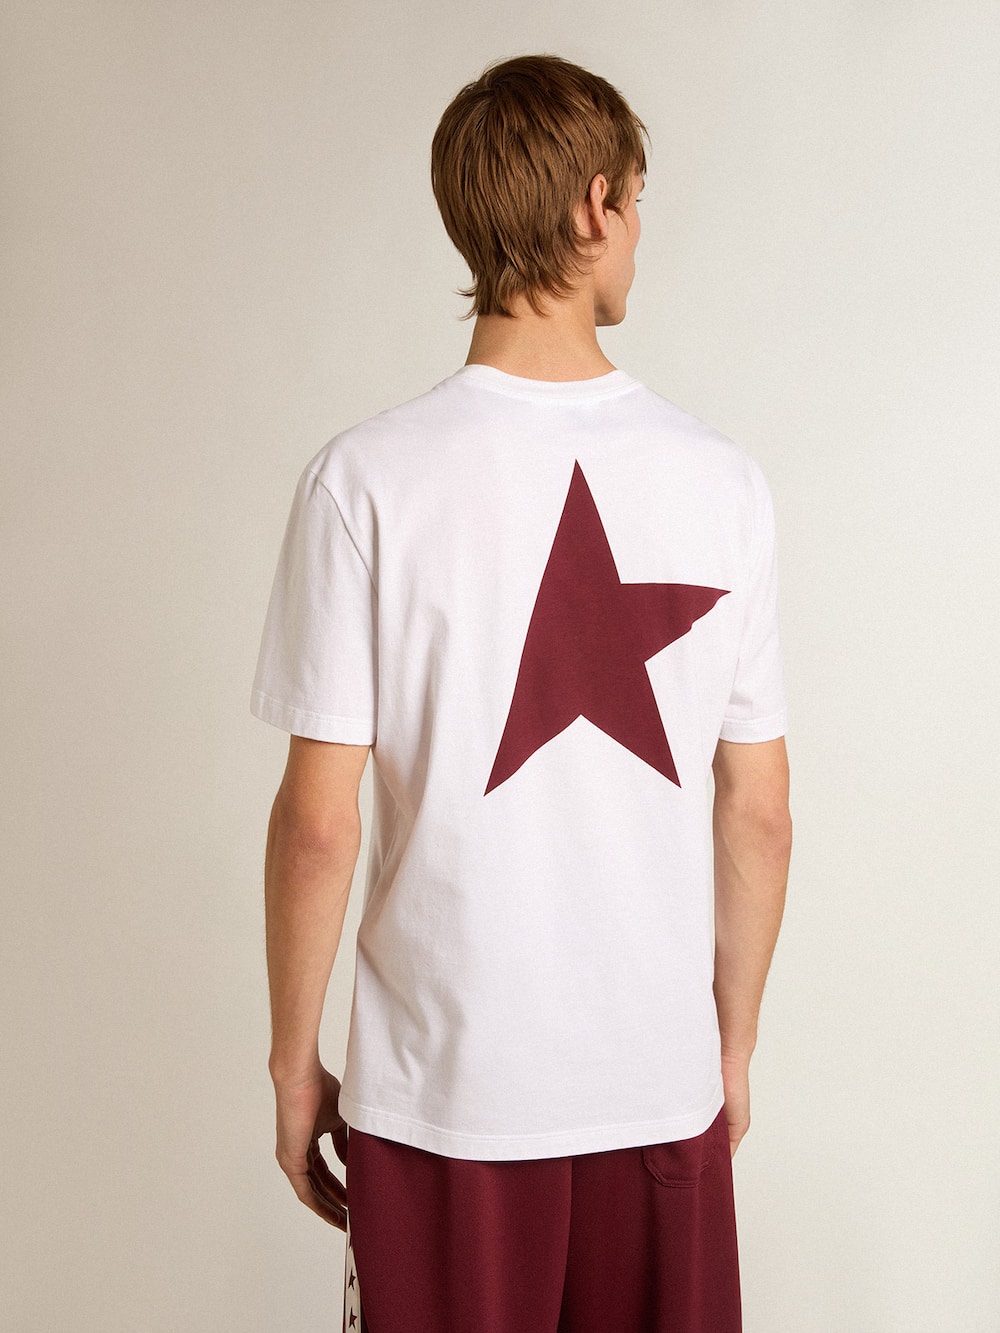 Golden Goose - Weißes Herren-T-Shirt mit Logo und Stern in kontrastierendem Bordeaux in 